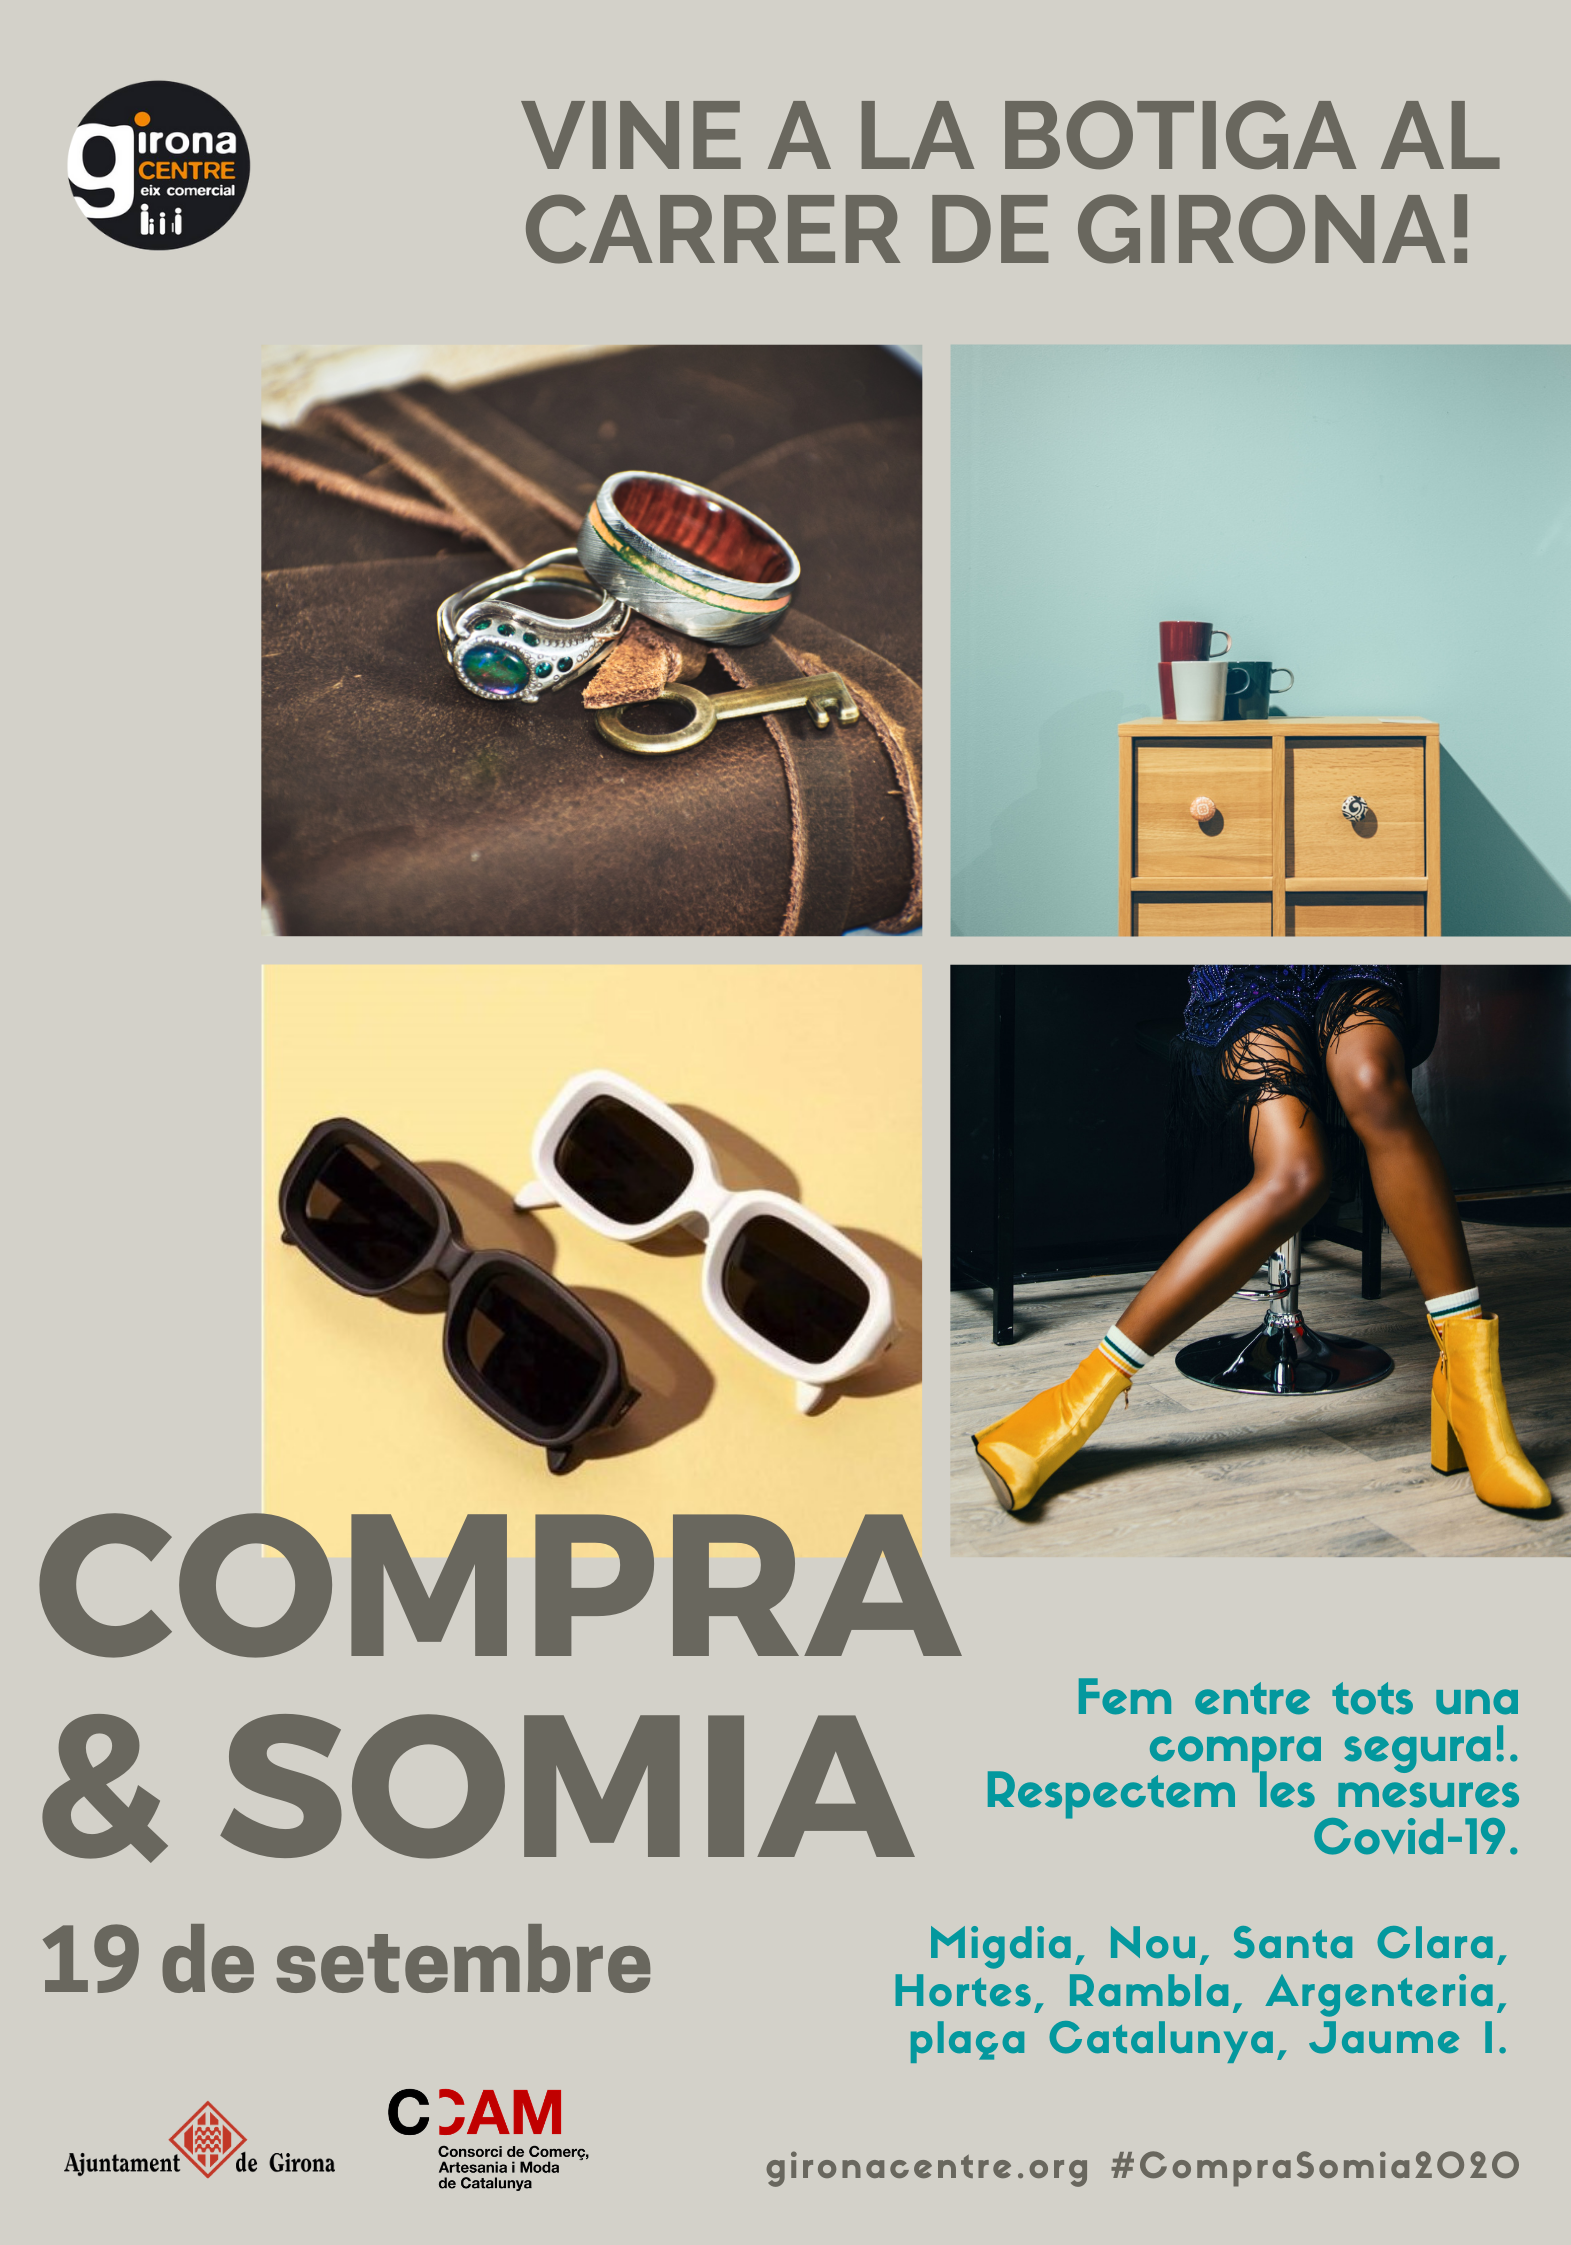 Dissabte 19 de setembre, la botiga al carrer "Compra & Somia"